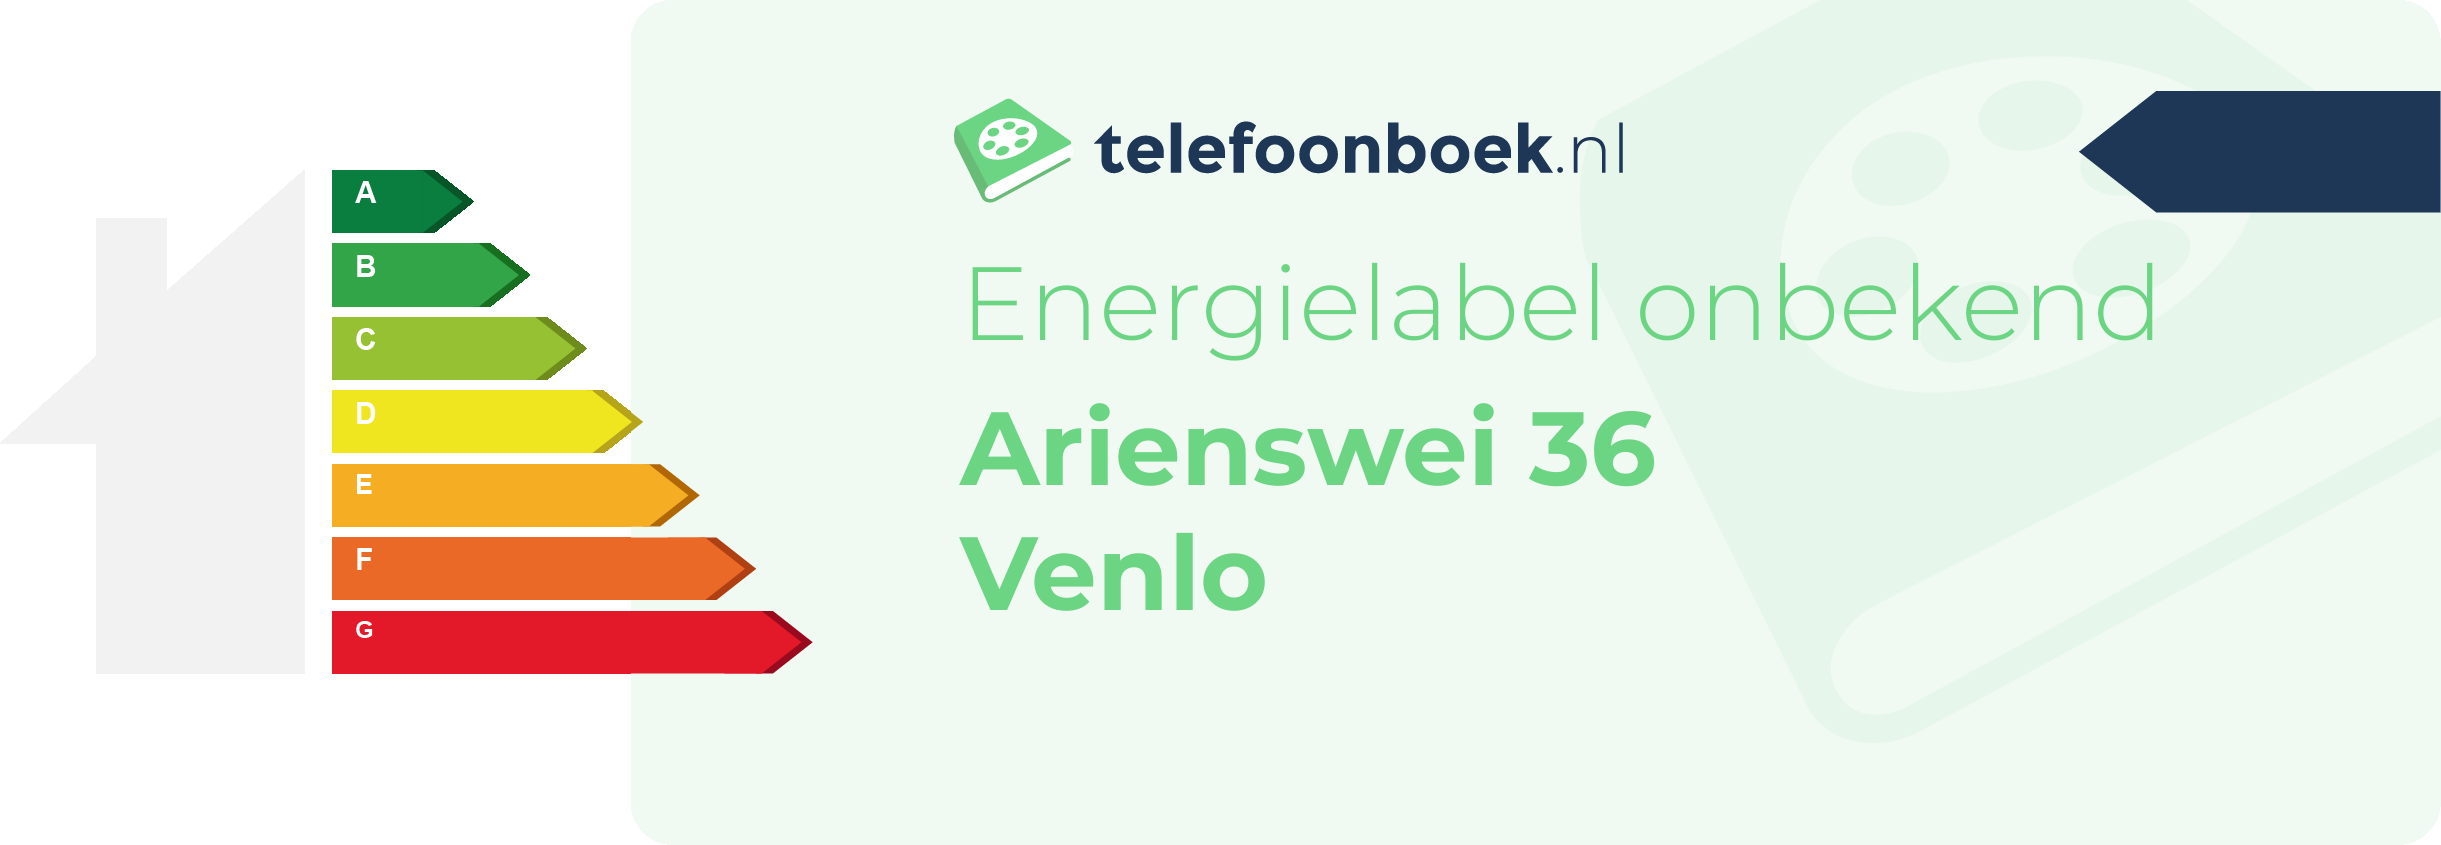 Energielabel Arienswei 36 Venlo